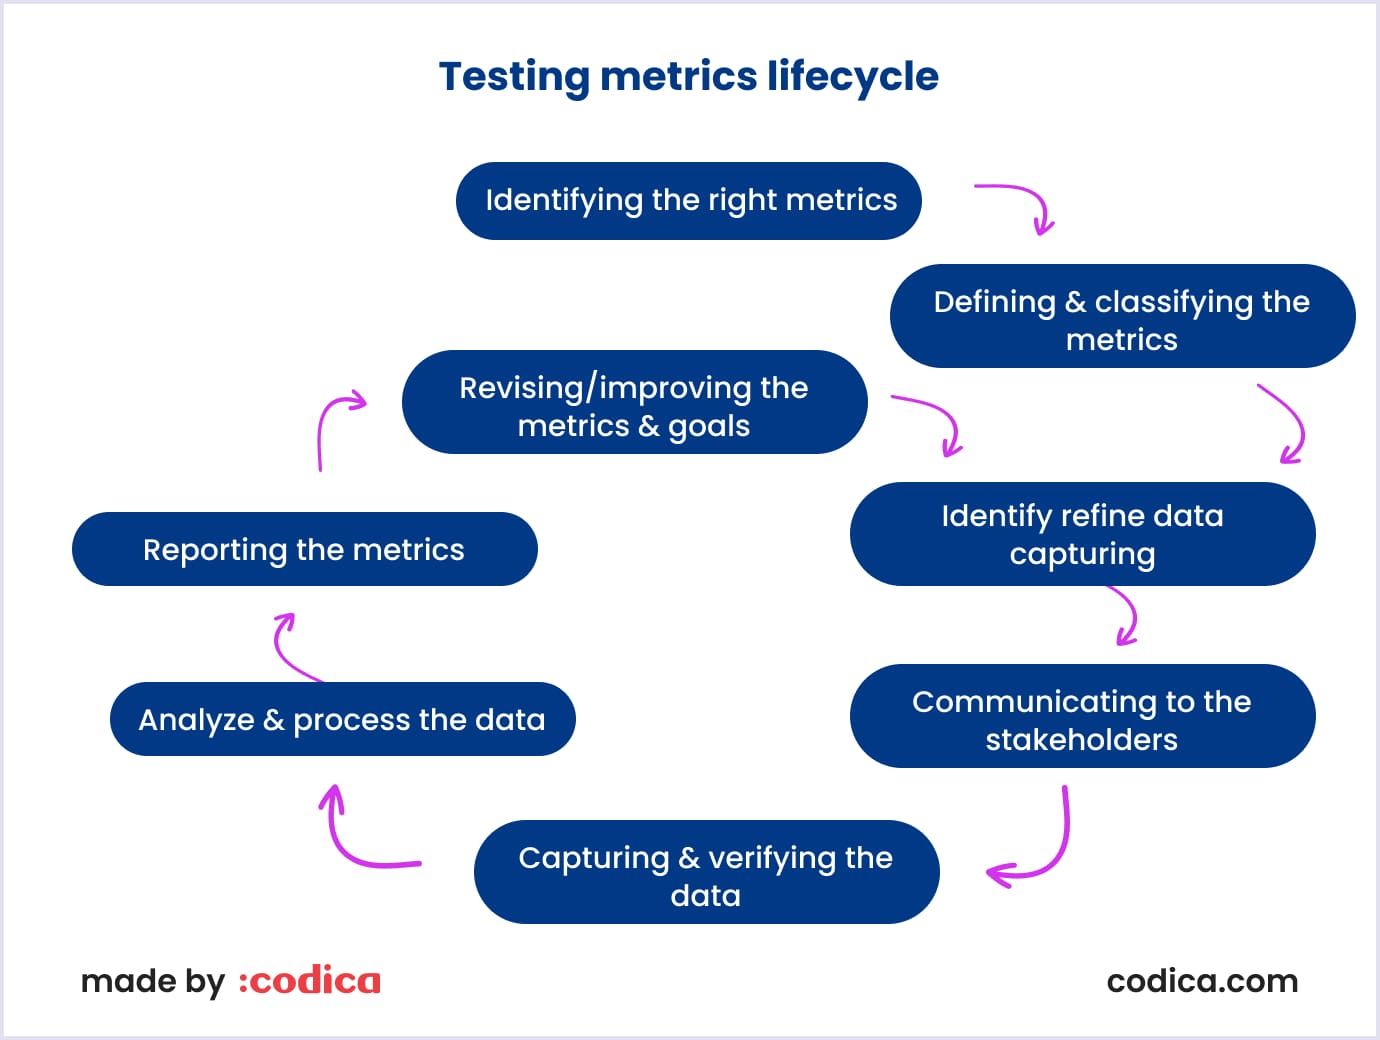 Test metrics lifecycle